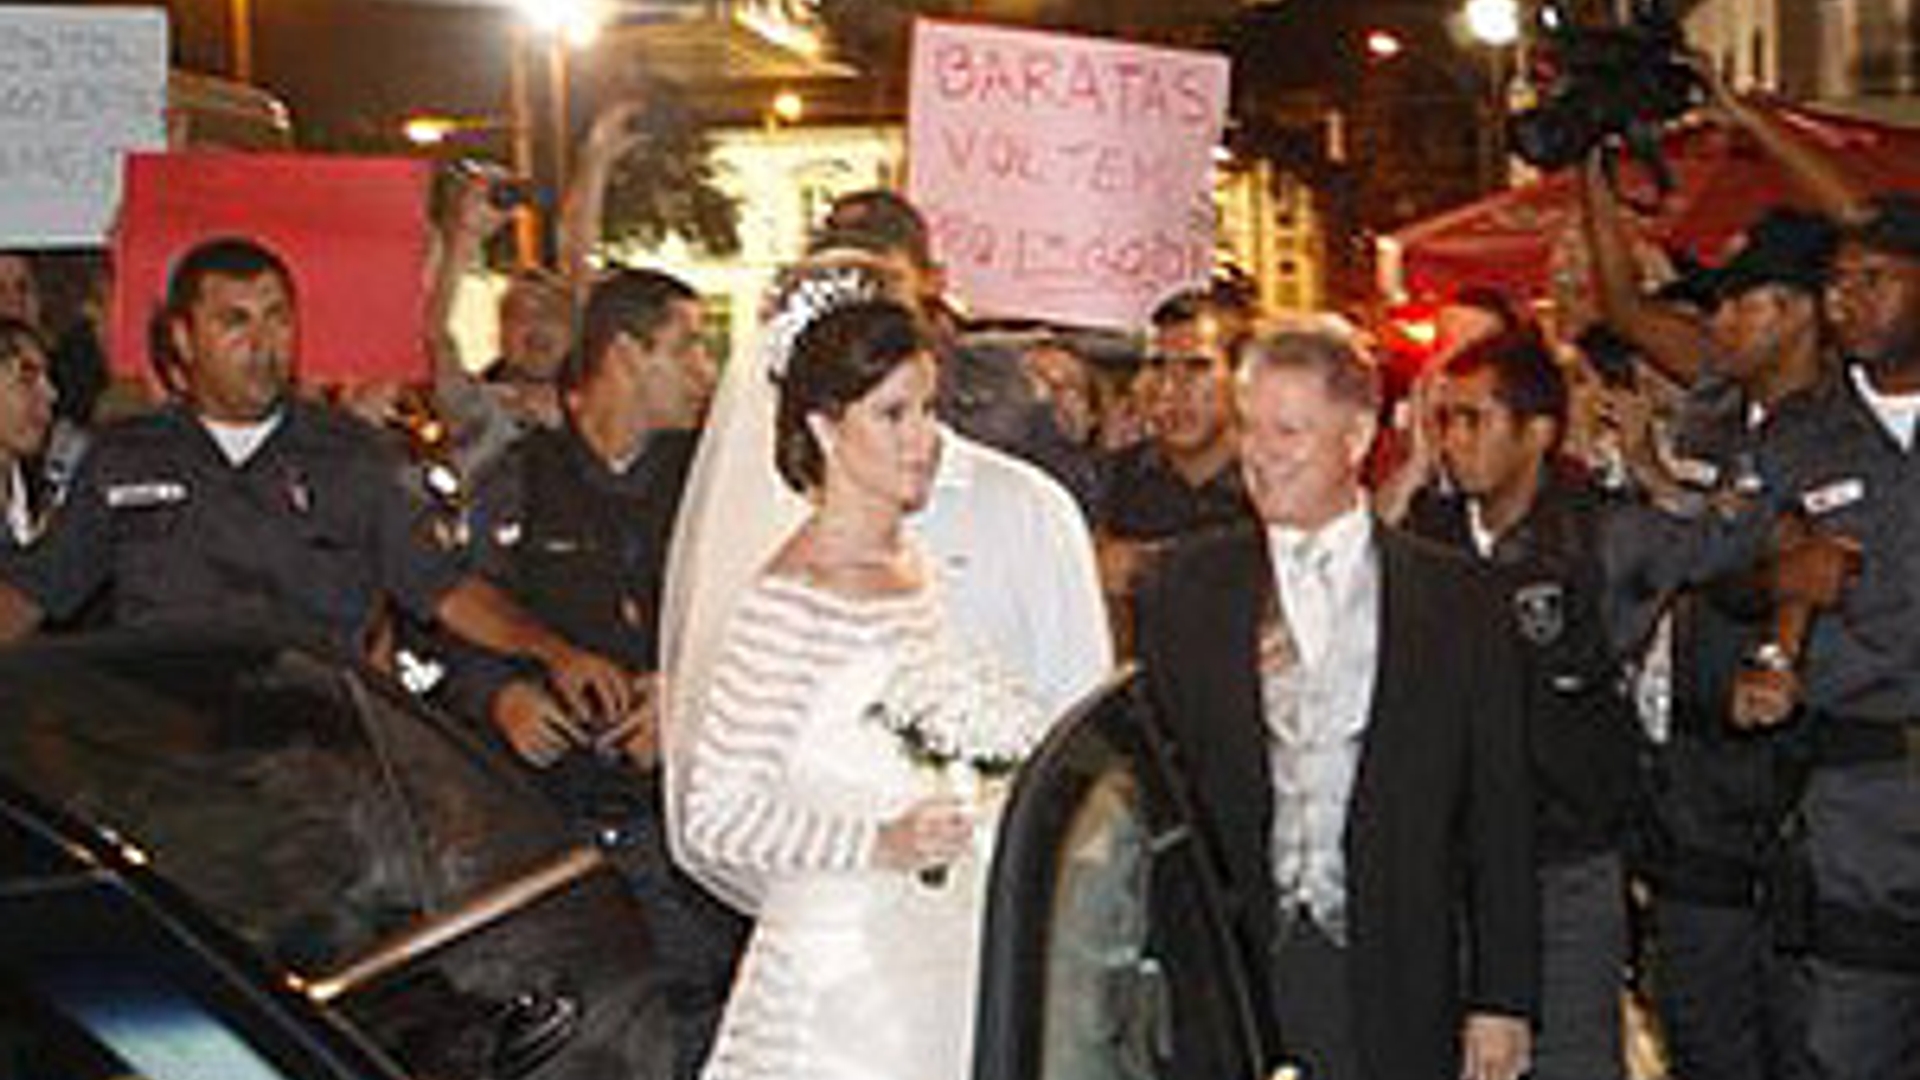 RTEmagicC_huwelijk-copacabana-palace2.jpg